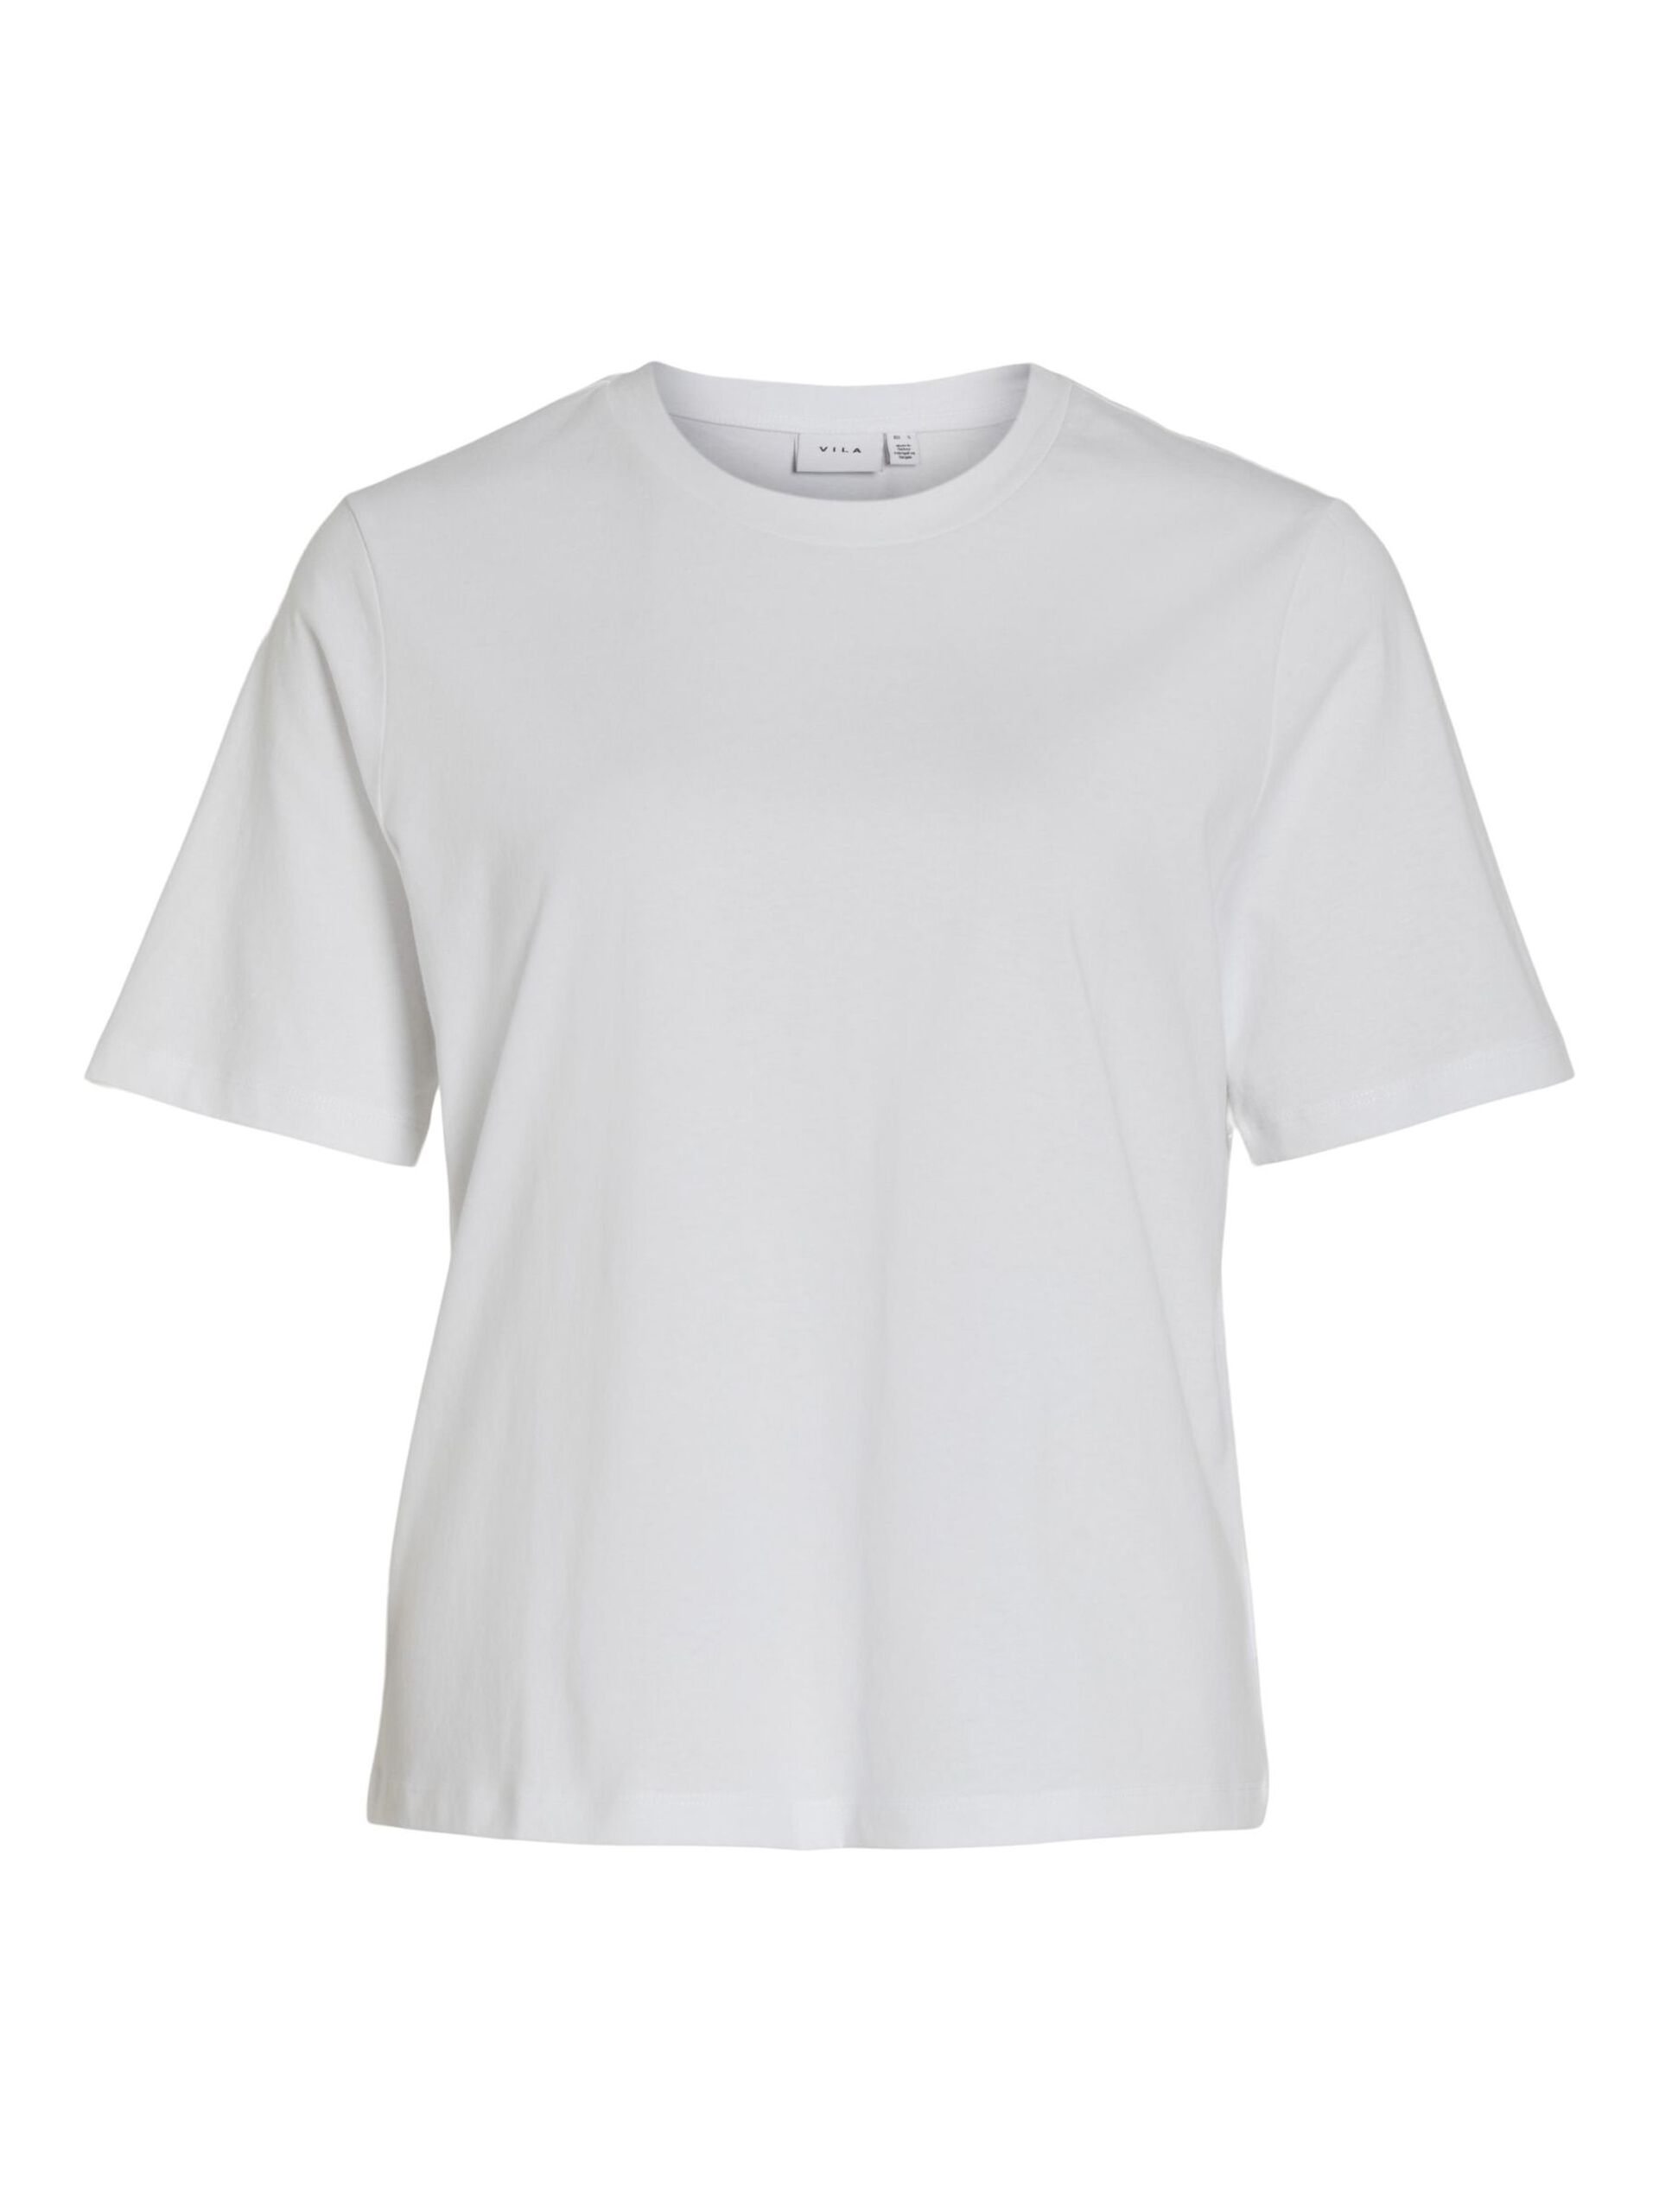 Camiseta básica de algodón modelo Darlene en color blanco con cuello redondo y manga corta. Corte cuadrado. Modelo 14089280 de Vila.